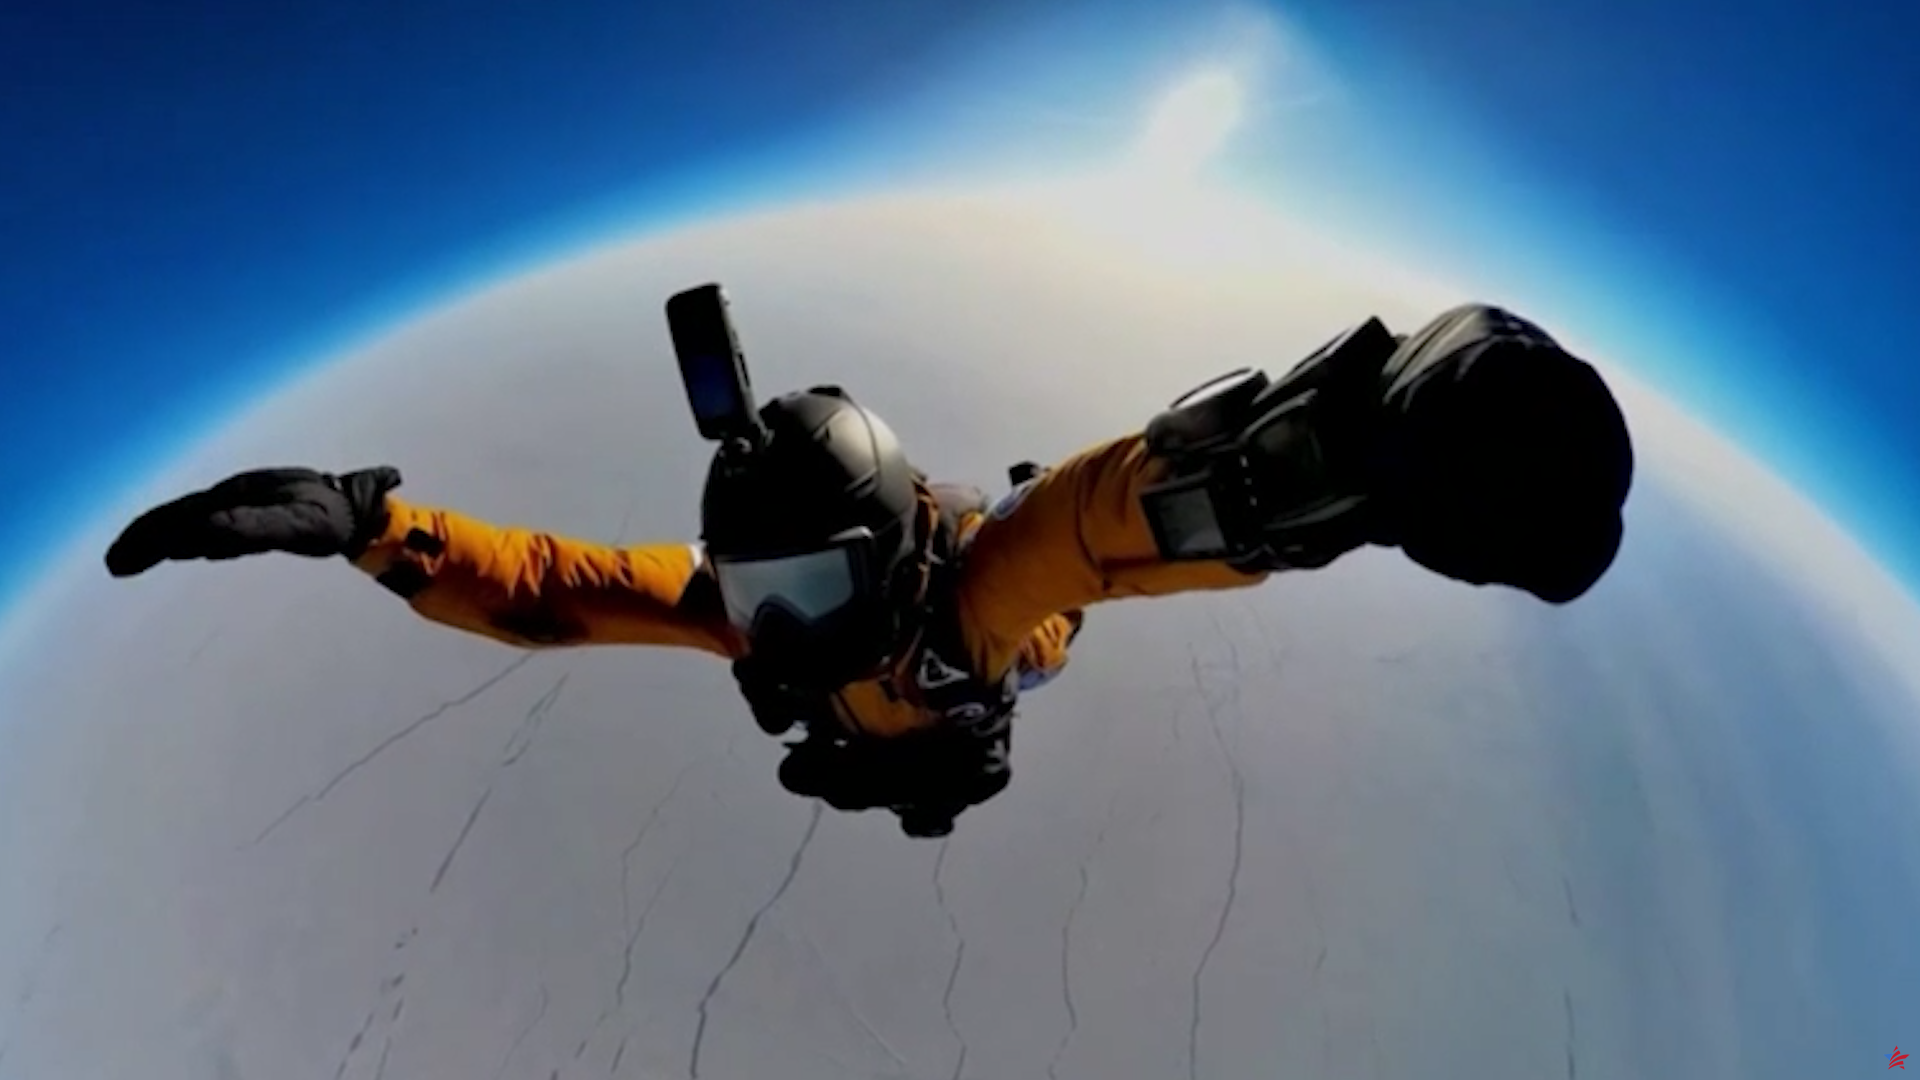 De la estratosfera al Polo Norte... Las vertiginosas imágenes del récord mundial de salto en paracaídas